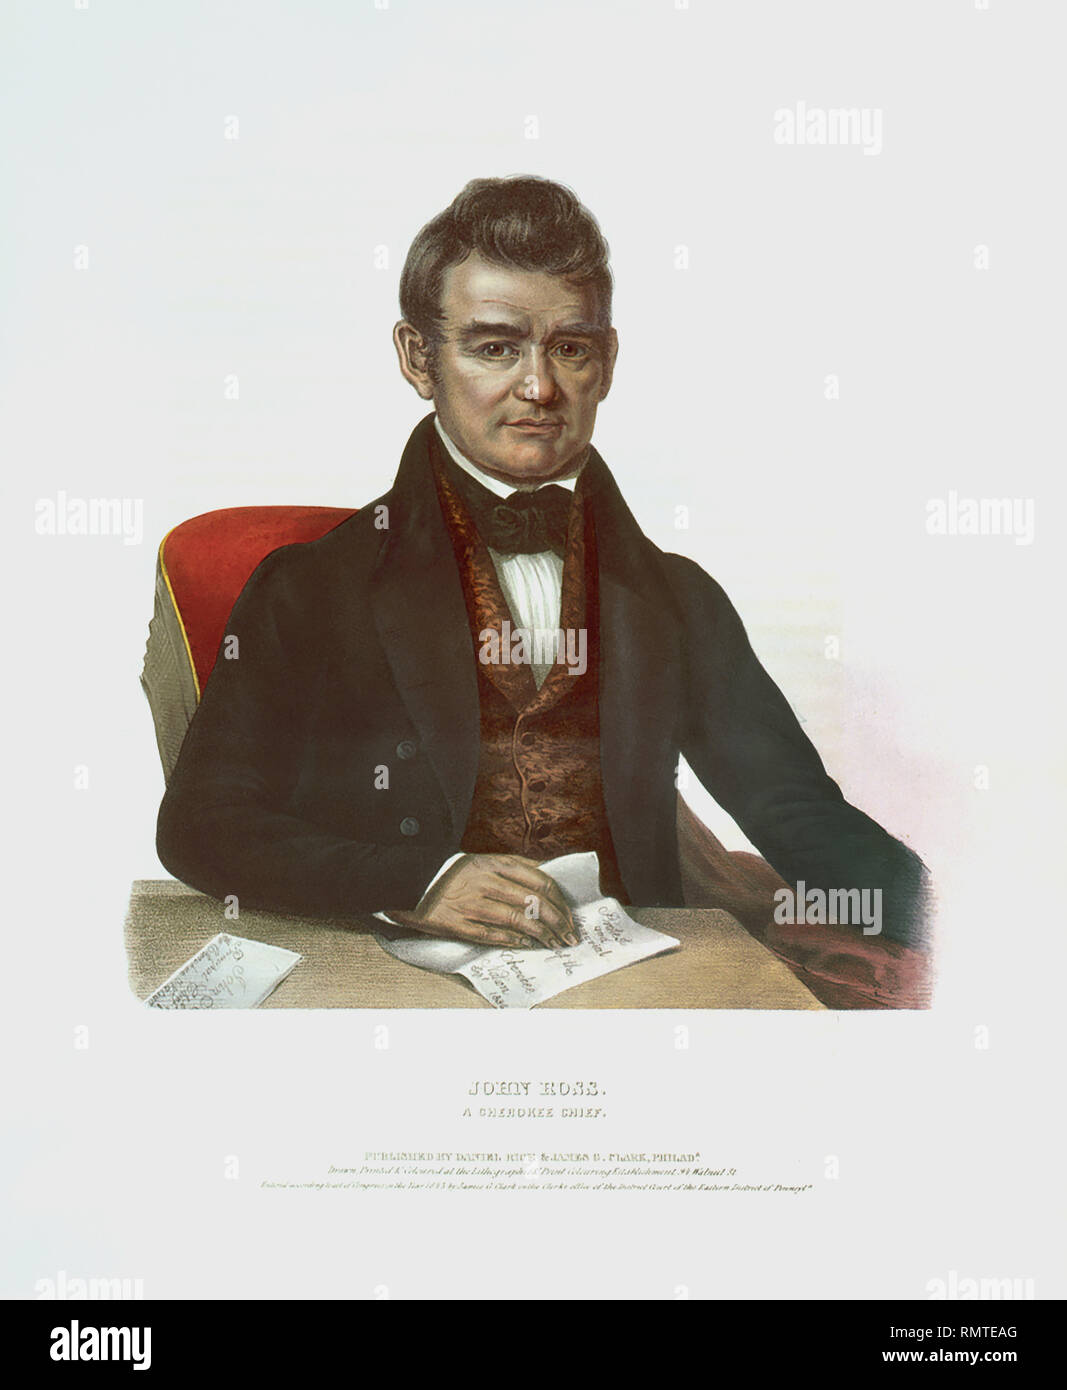 John Ross, ein Cherokee Chief, Lithographie von John T. Bowen, von Daniel Reis und James G. Clark, 1843 veröffentlicht. Stockfoto